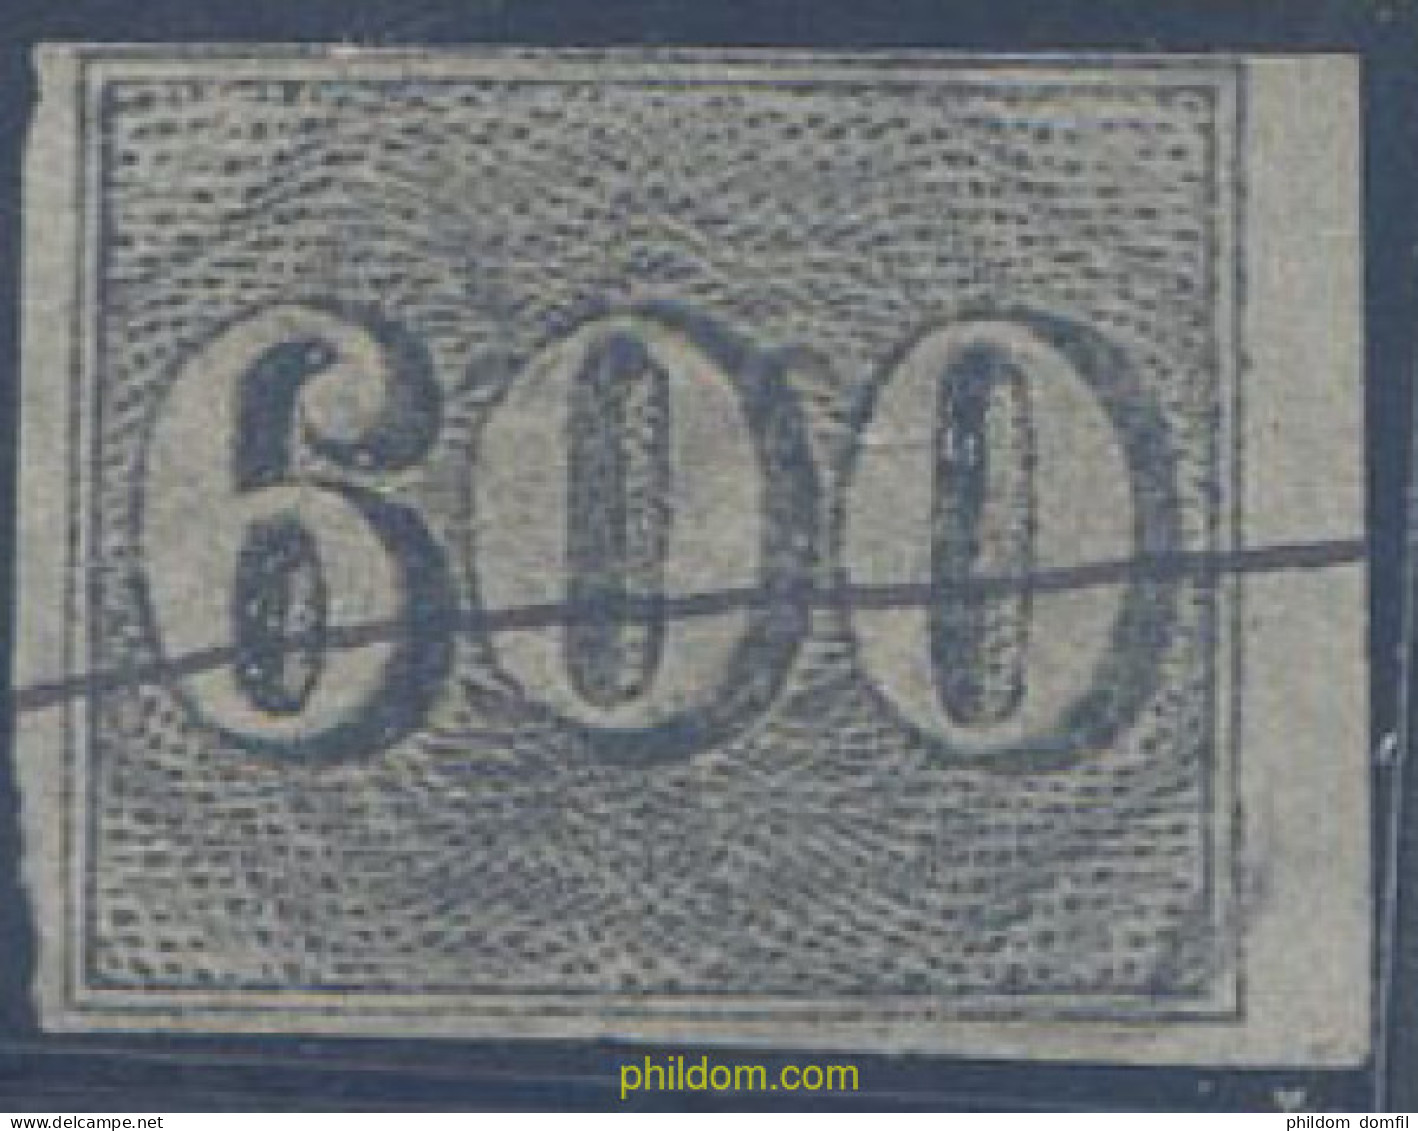 647895 USED BRASIL 1850 CIFRAS PEQUEÑAS - Unused Stamps